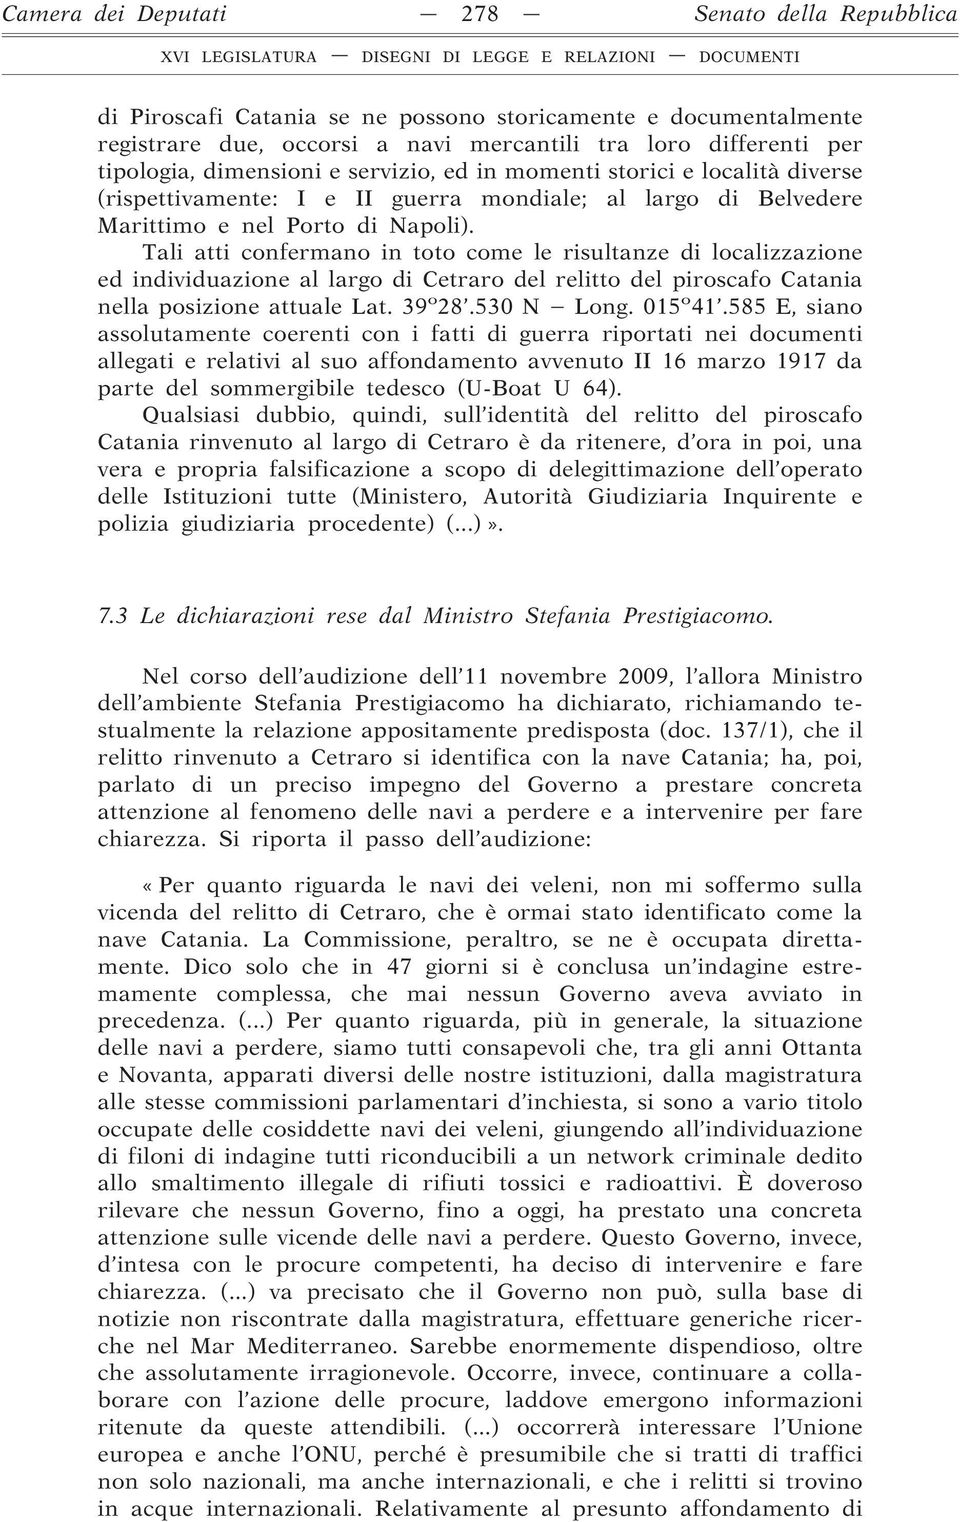 Tali atti confermano in toto come le risultanze di localizzazione ed individuazione al largo di Cetraro del relitto del piroscafo Catania nella posizione attuale Lat. 39 o 28.530 N Long. 015 o 41.